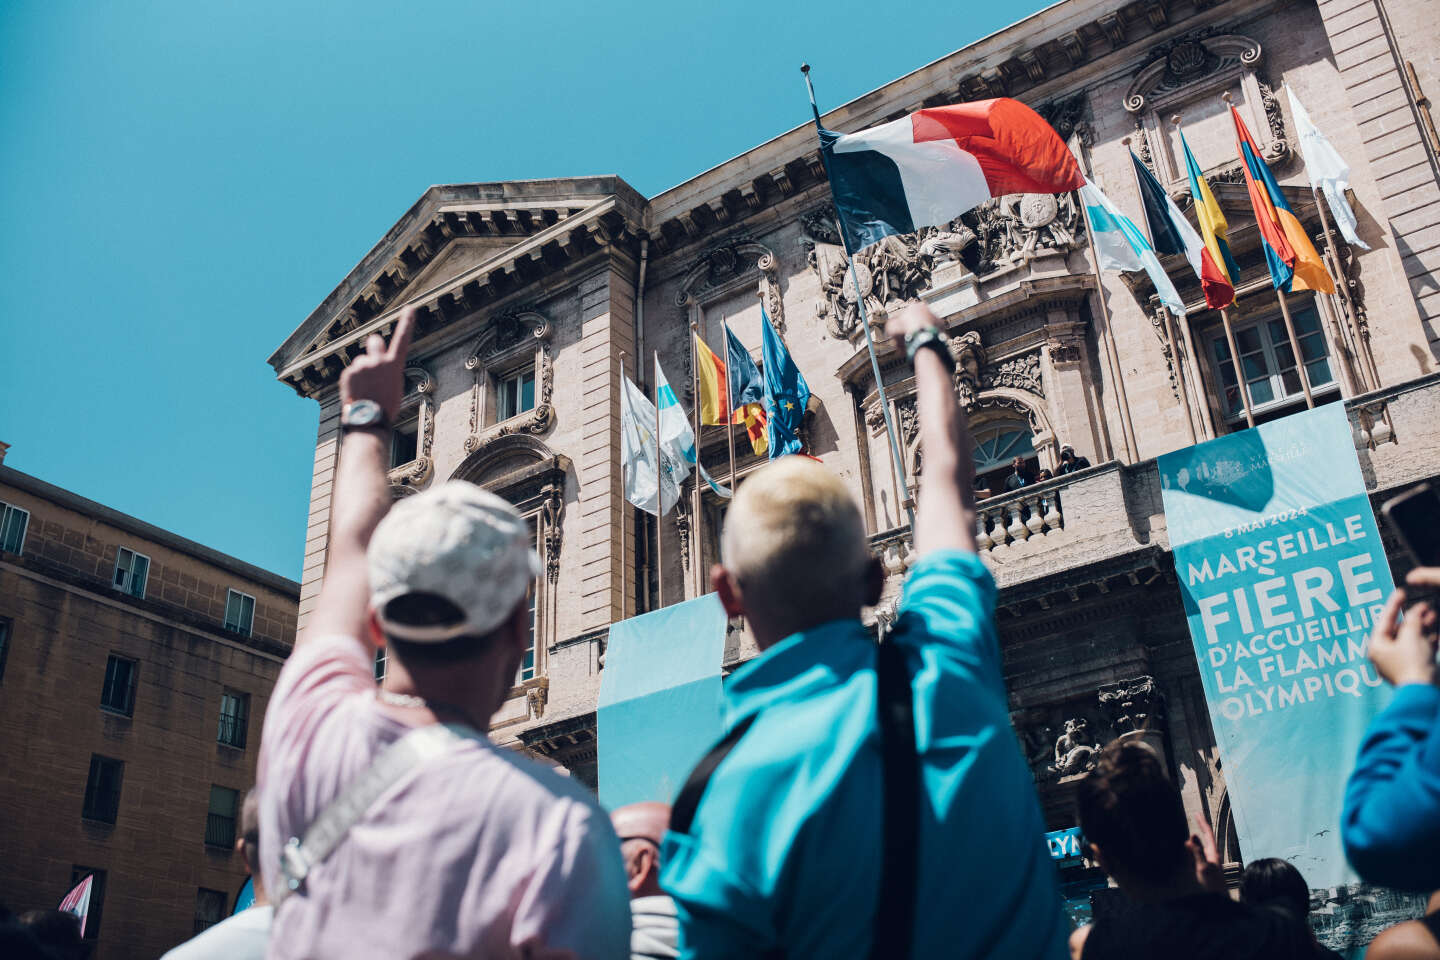 A Marsiglia, una giornata di entusiasmo popolare che ‘fa bene al morale’